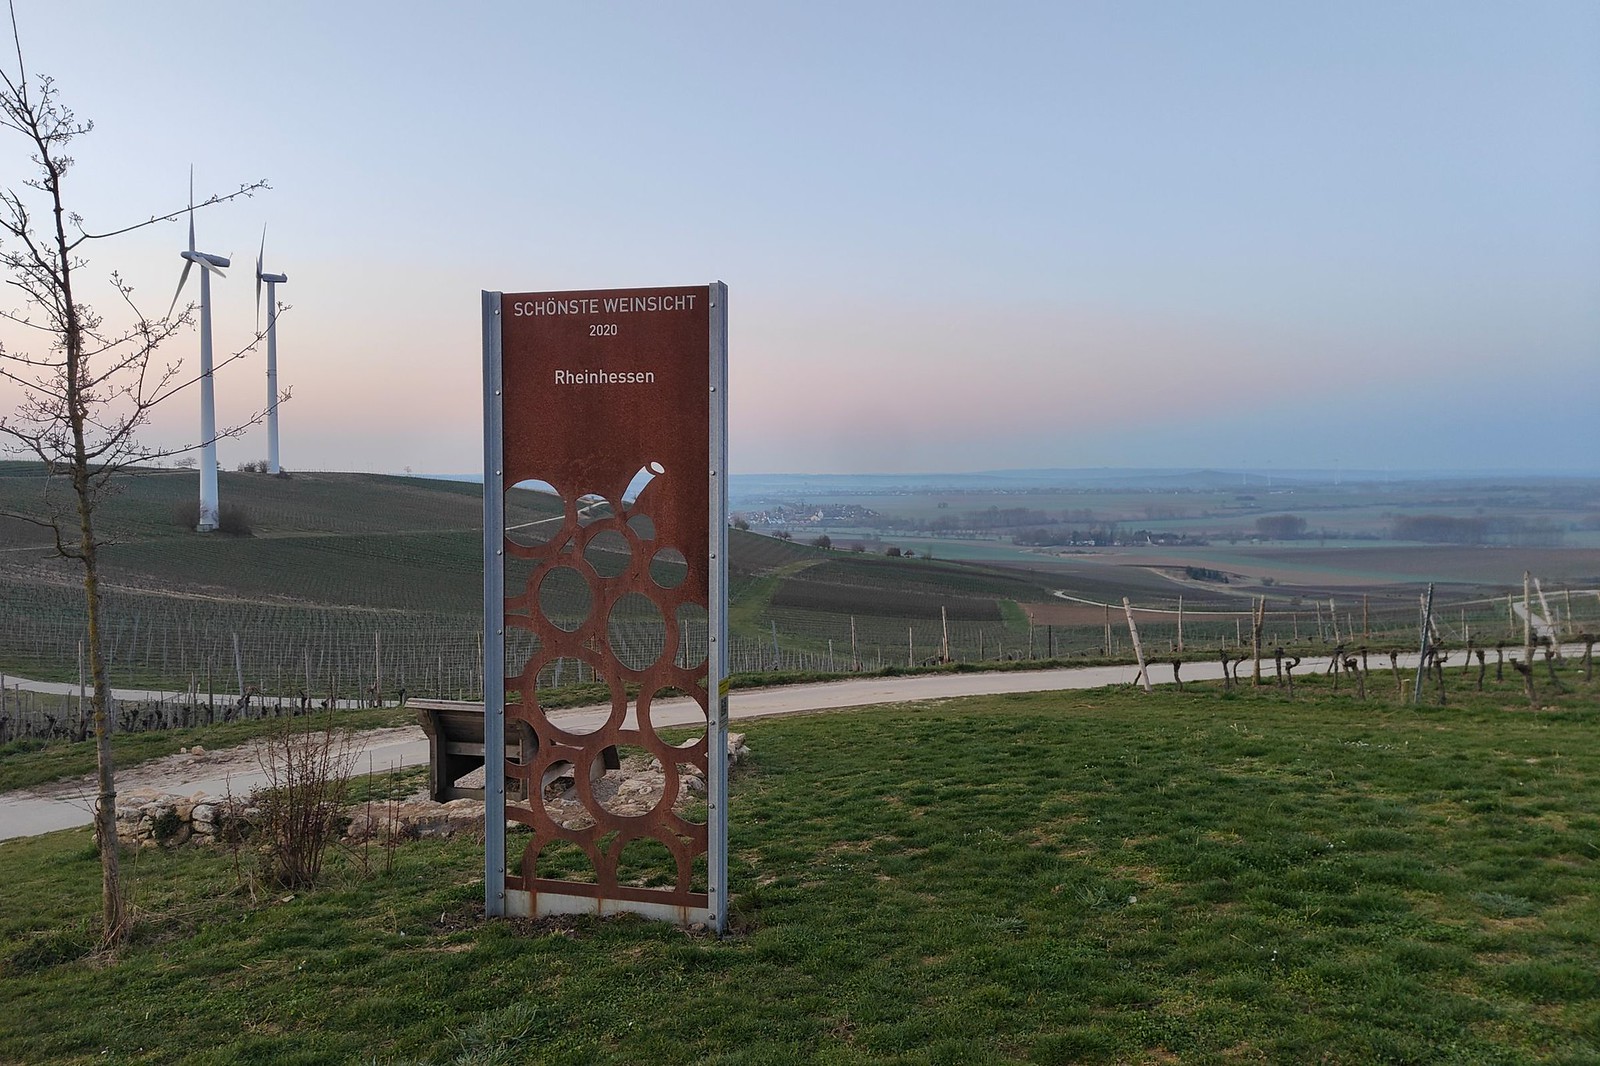 Schönste Weinsicht 2020 Rheinhessen